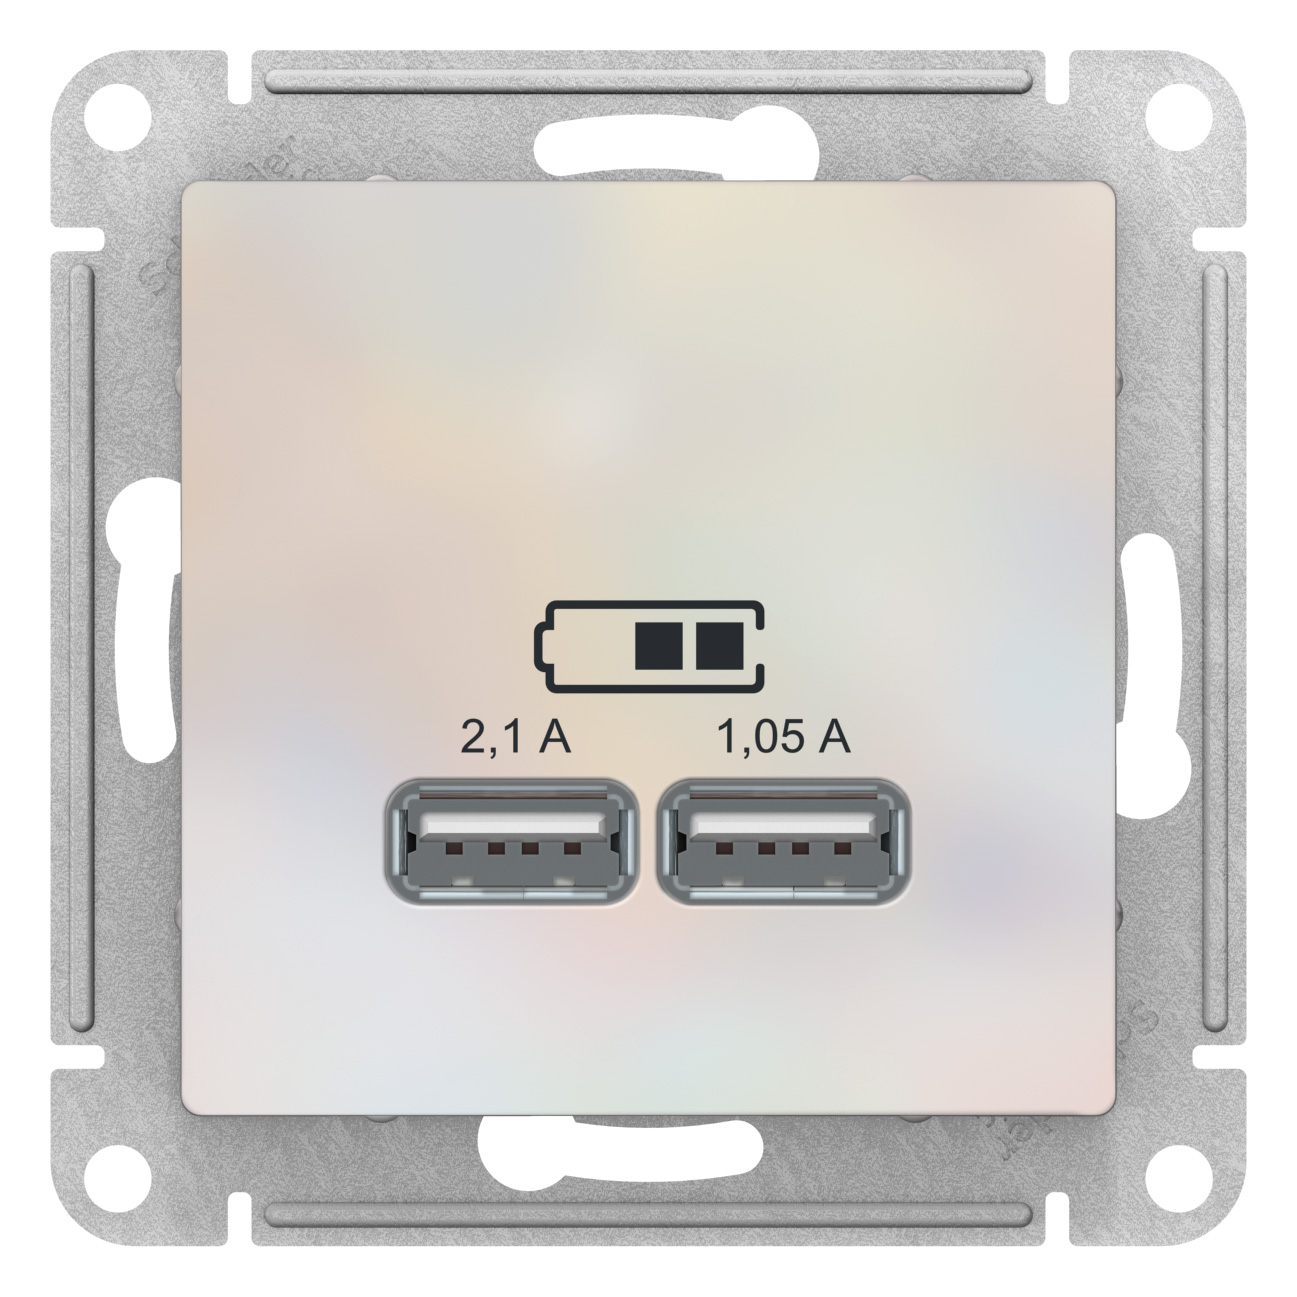 SE AtlasDesign Жемчуг Розетка USB, 5В, 1 порт x 2,1 А, 2 порта х 1,05 А, механизм